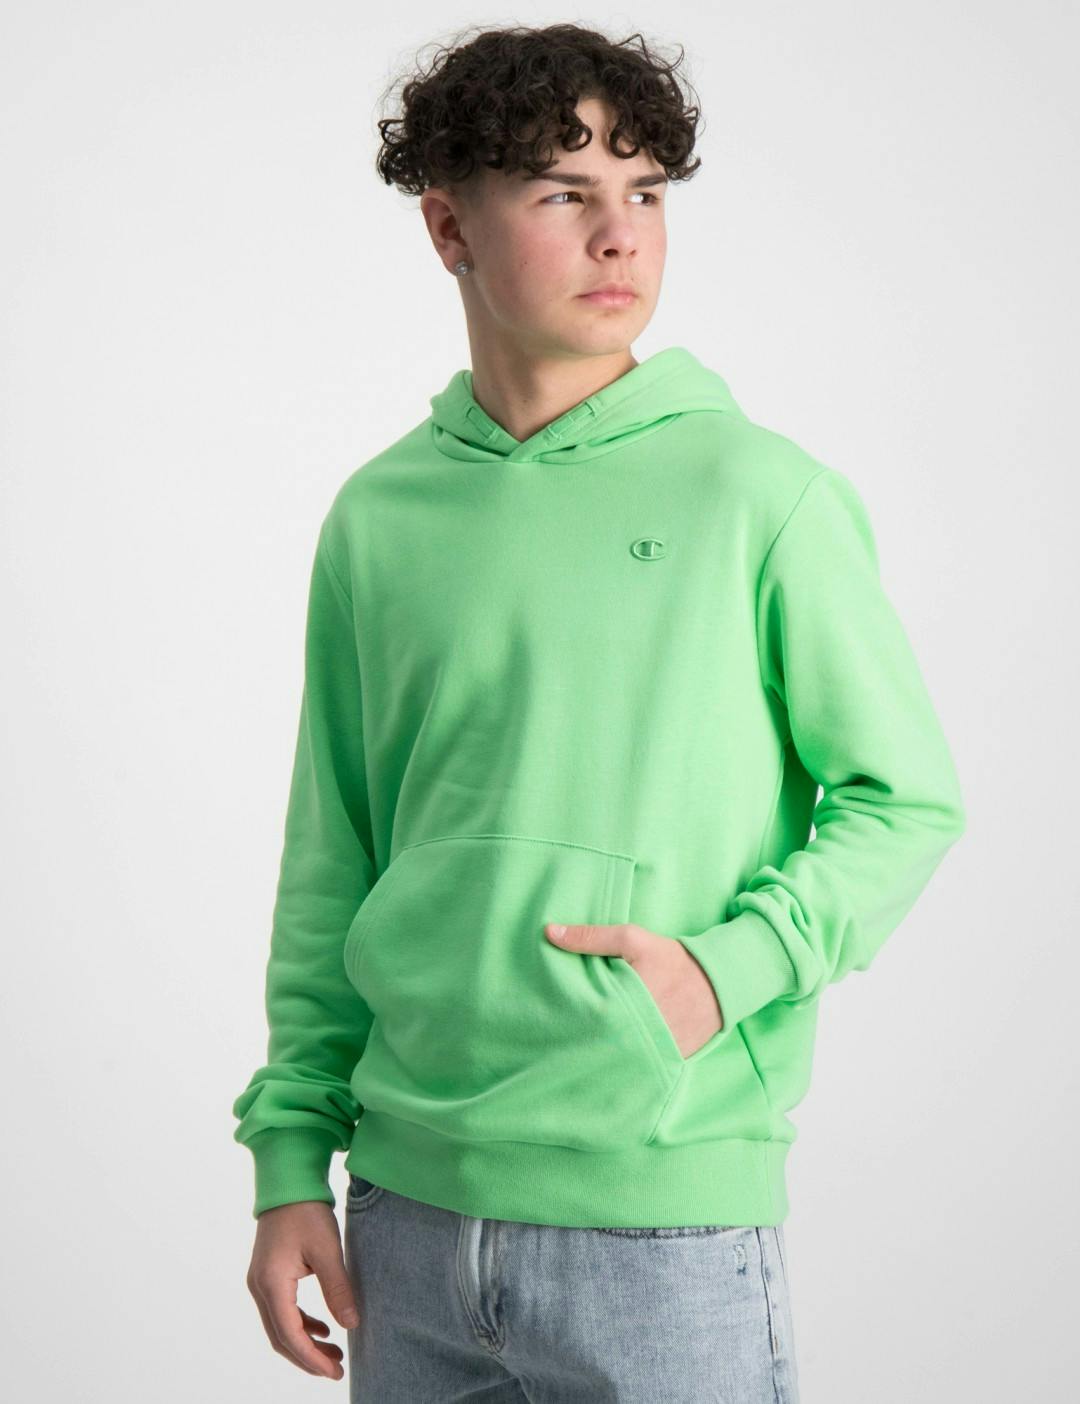 Grün Hooded Sweatshirt für Jungen Store Kids Brand 